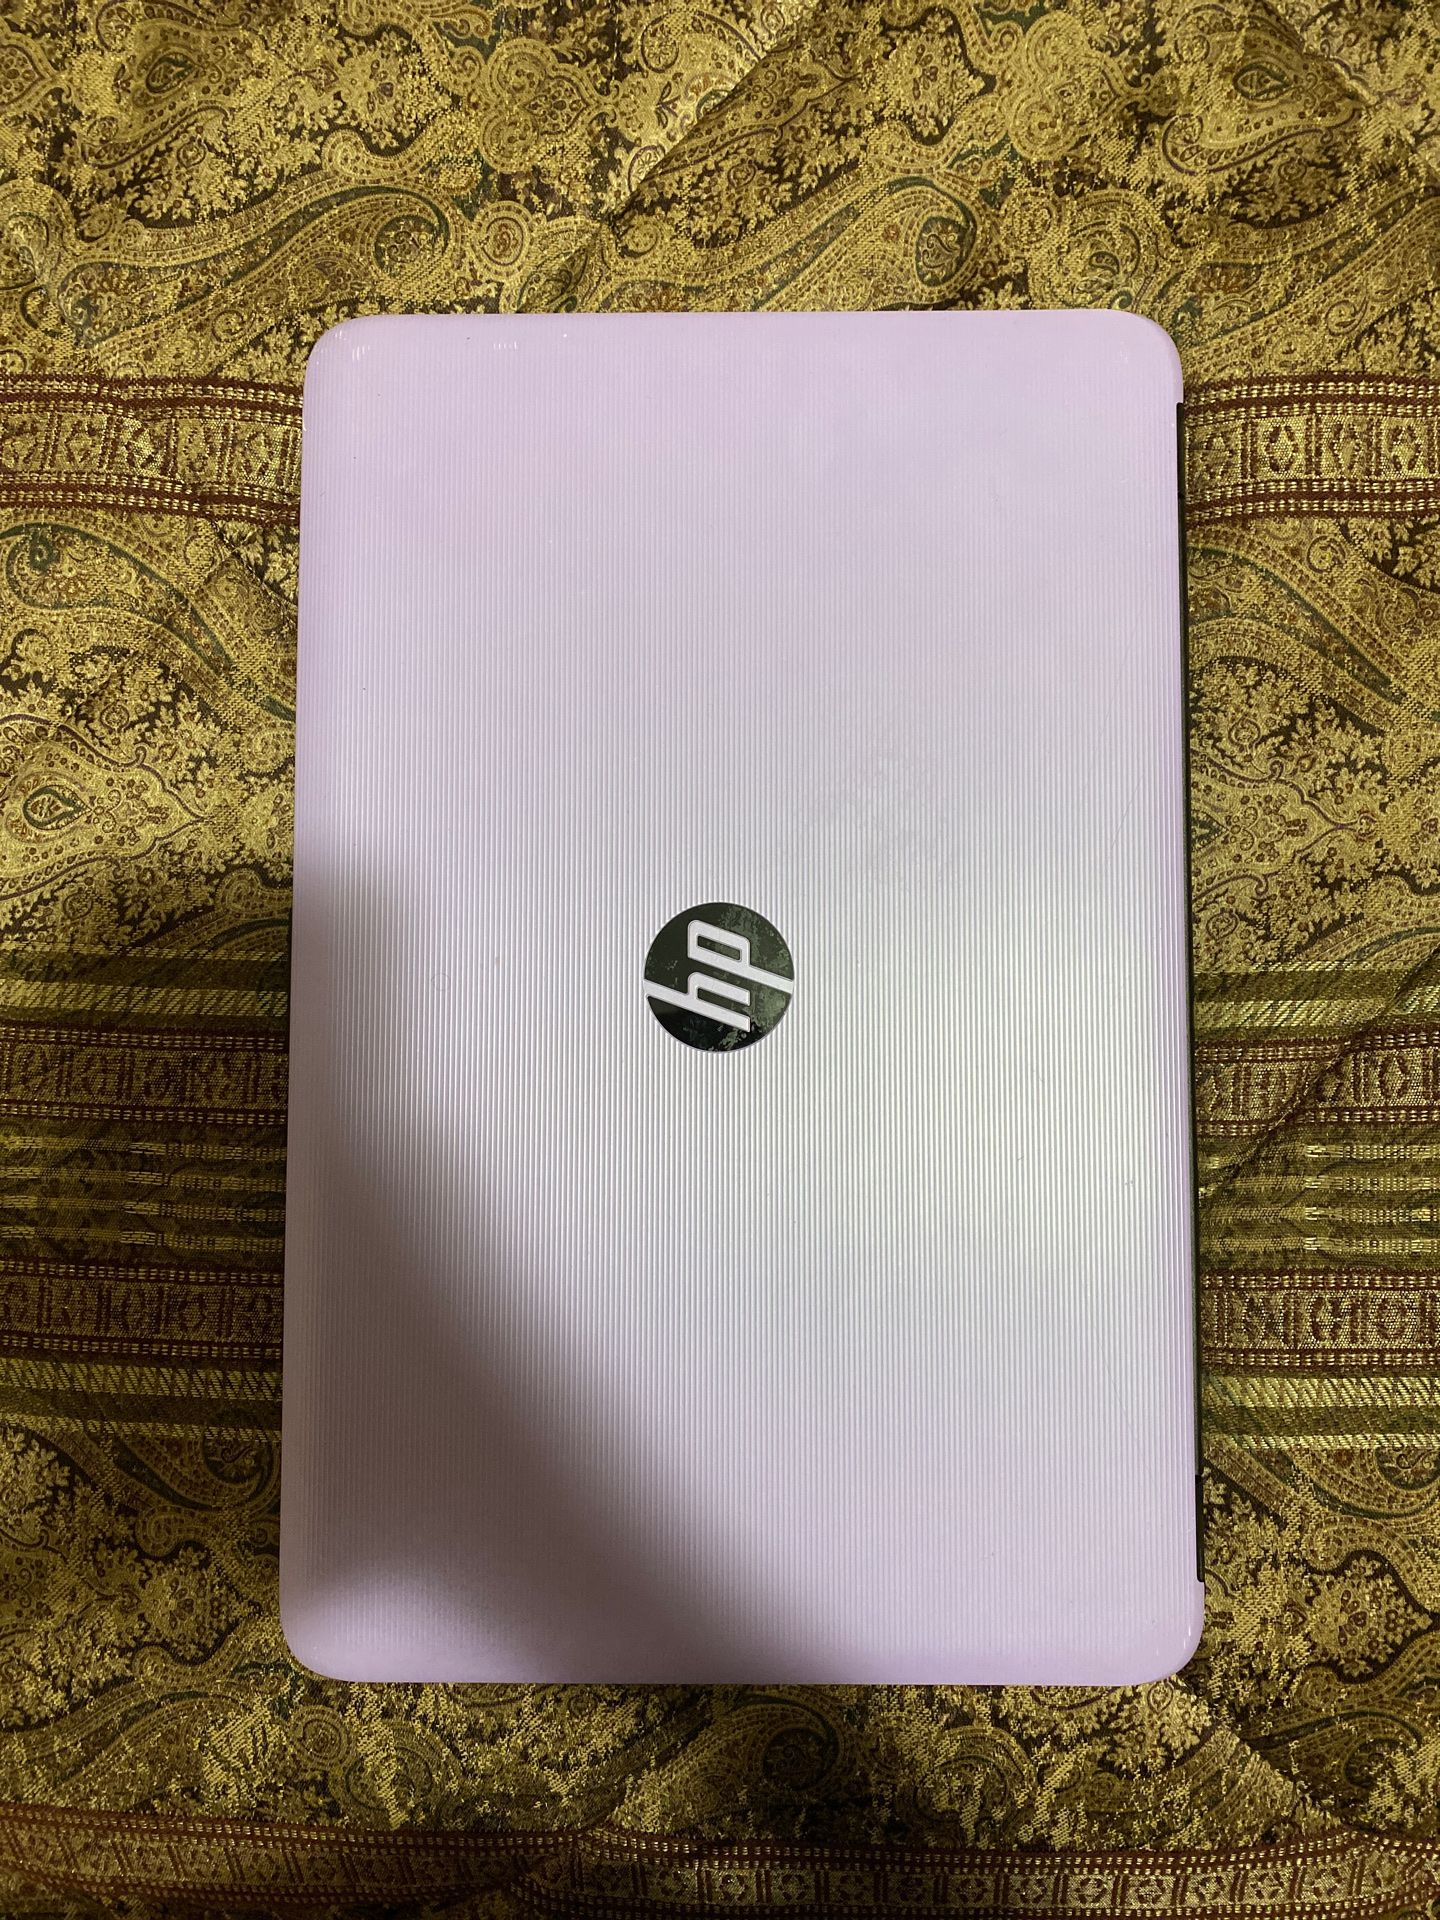 HP G5 notebook laptop